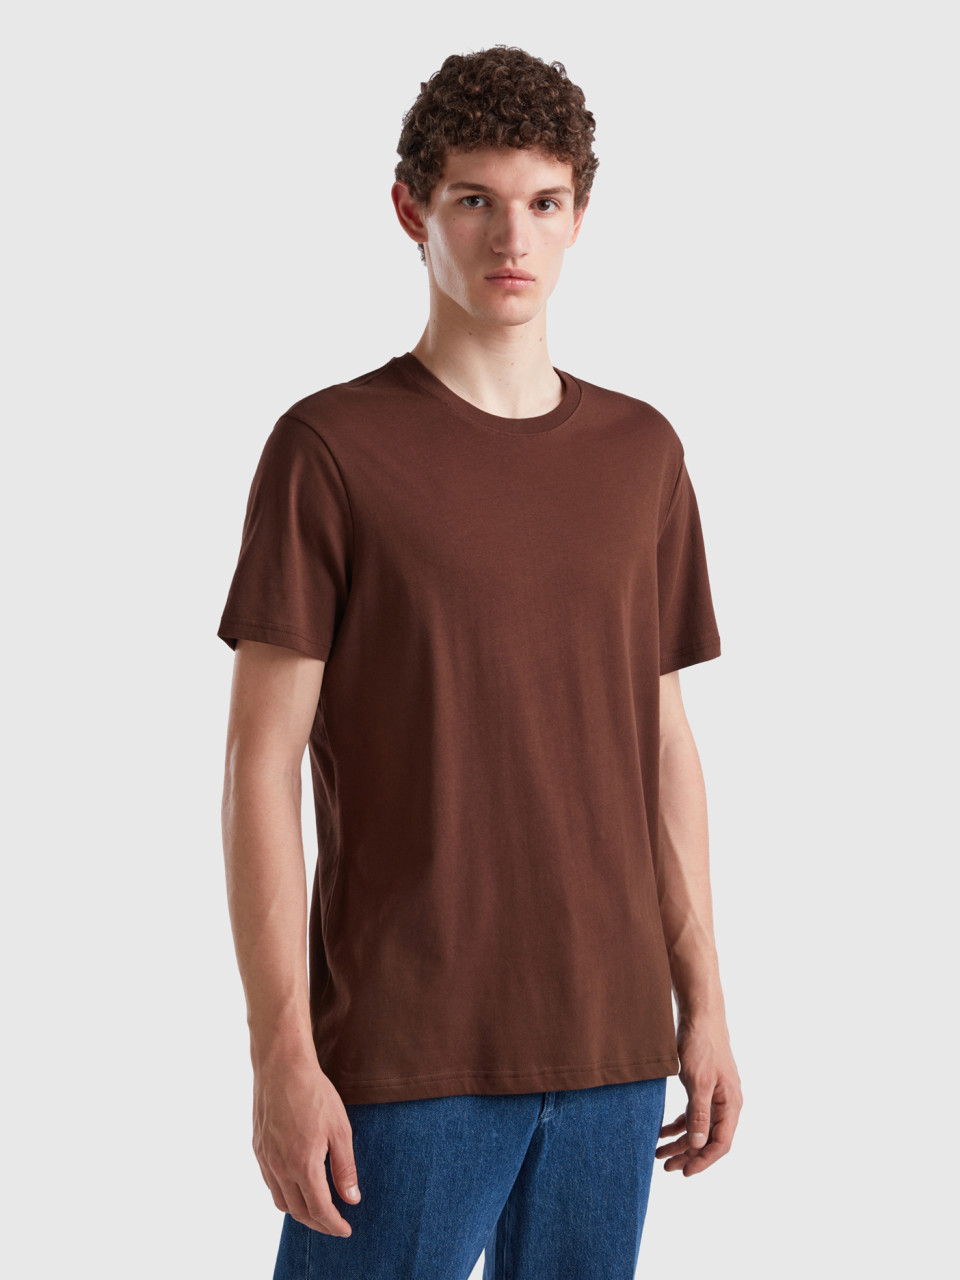 Benetton, Dark Brown T-shirt, Dark Brown, Men